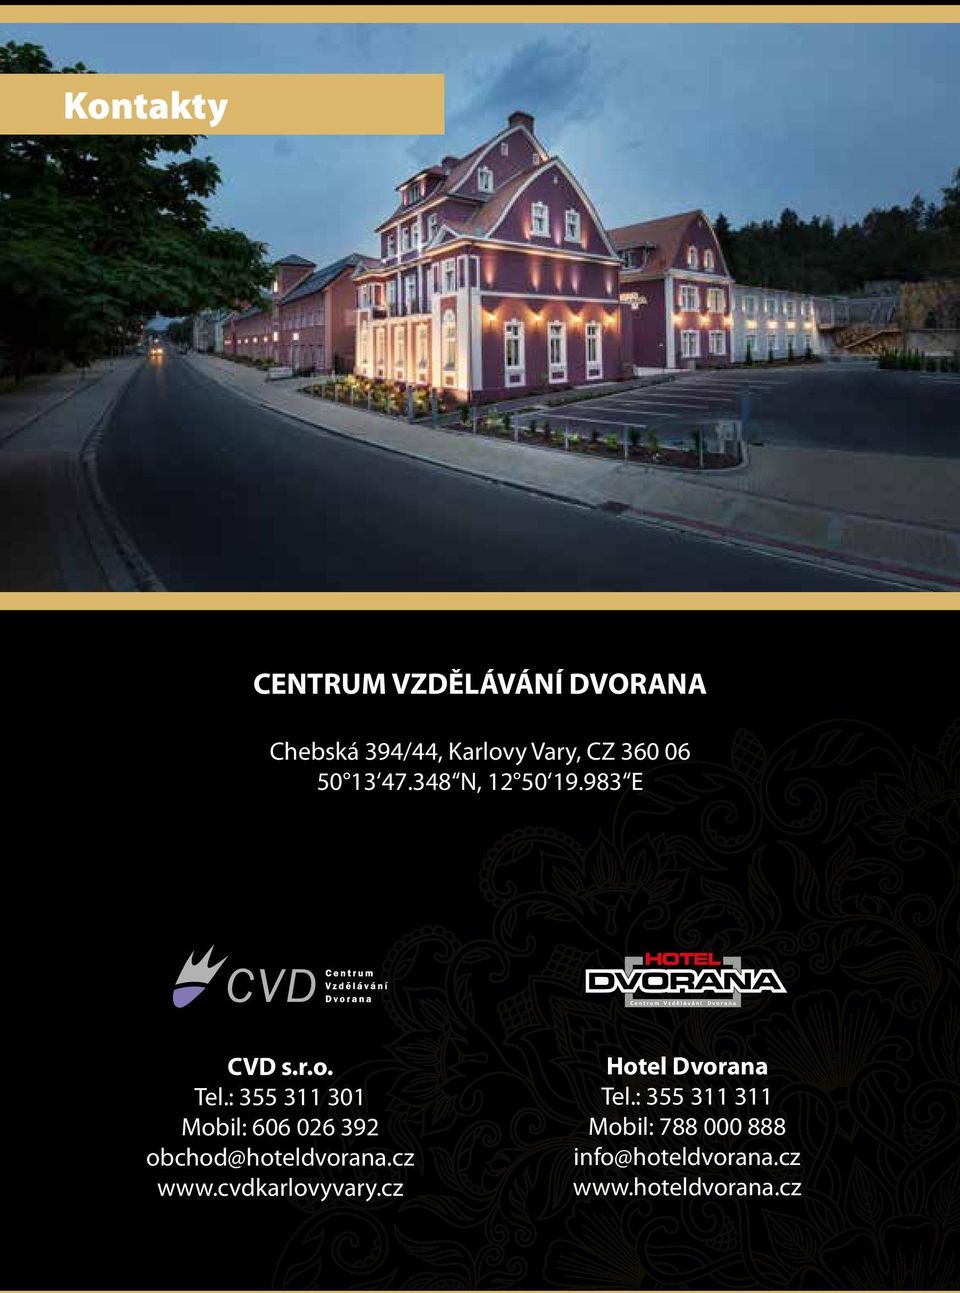 : 355 311 301 Mobil: 606 06 39 obchod@hoteldvorana.cz www.